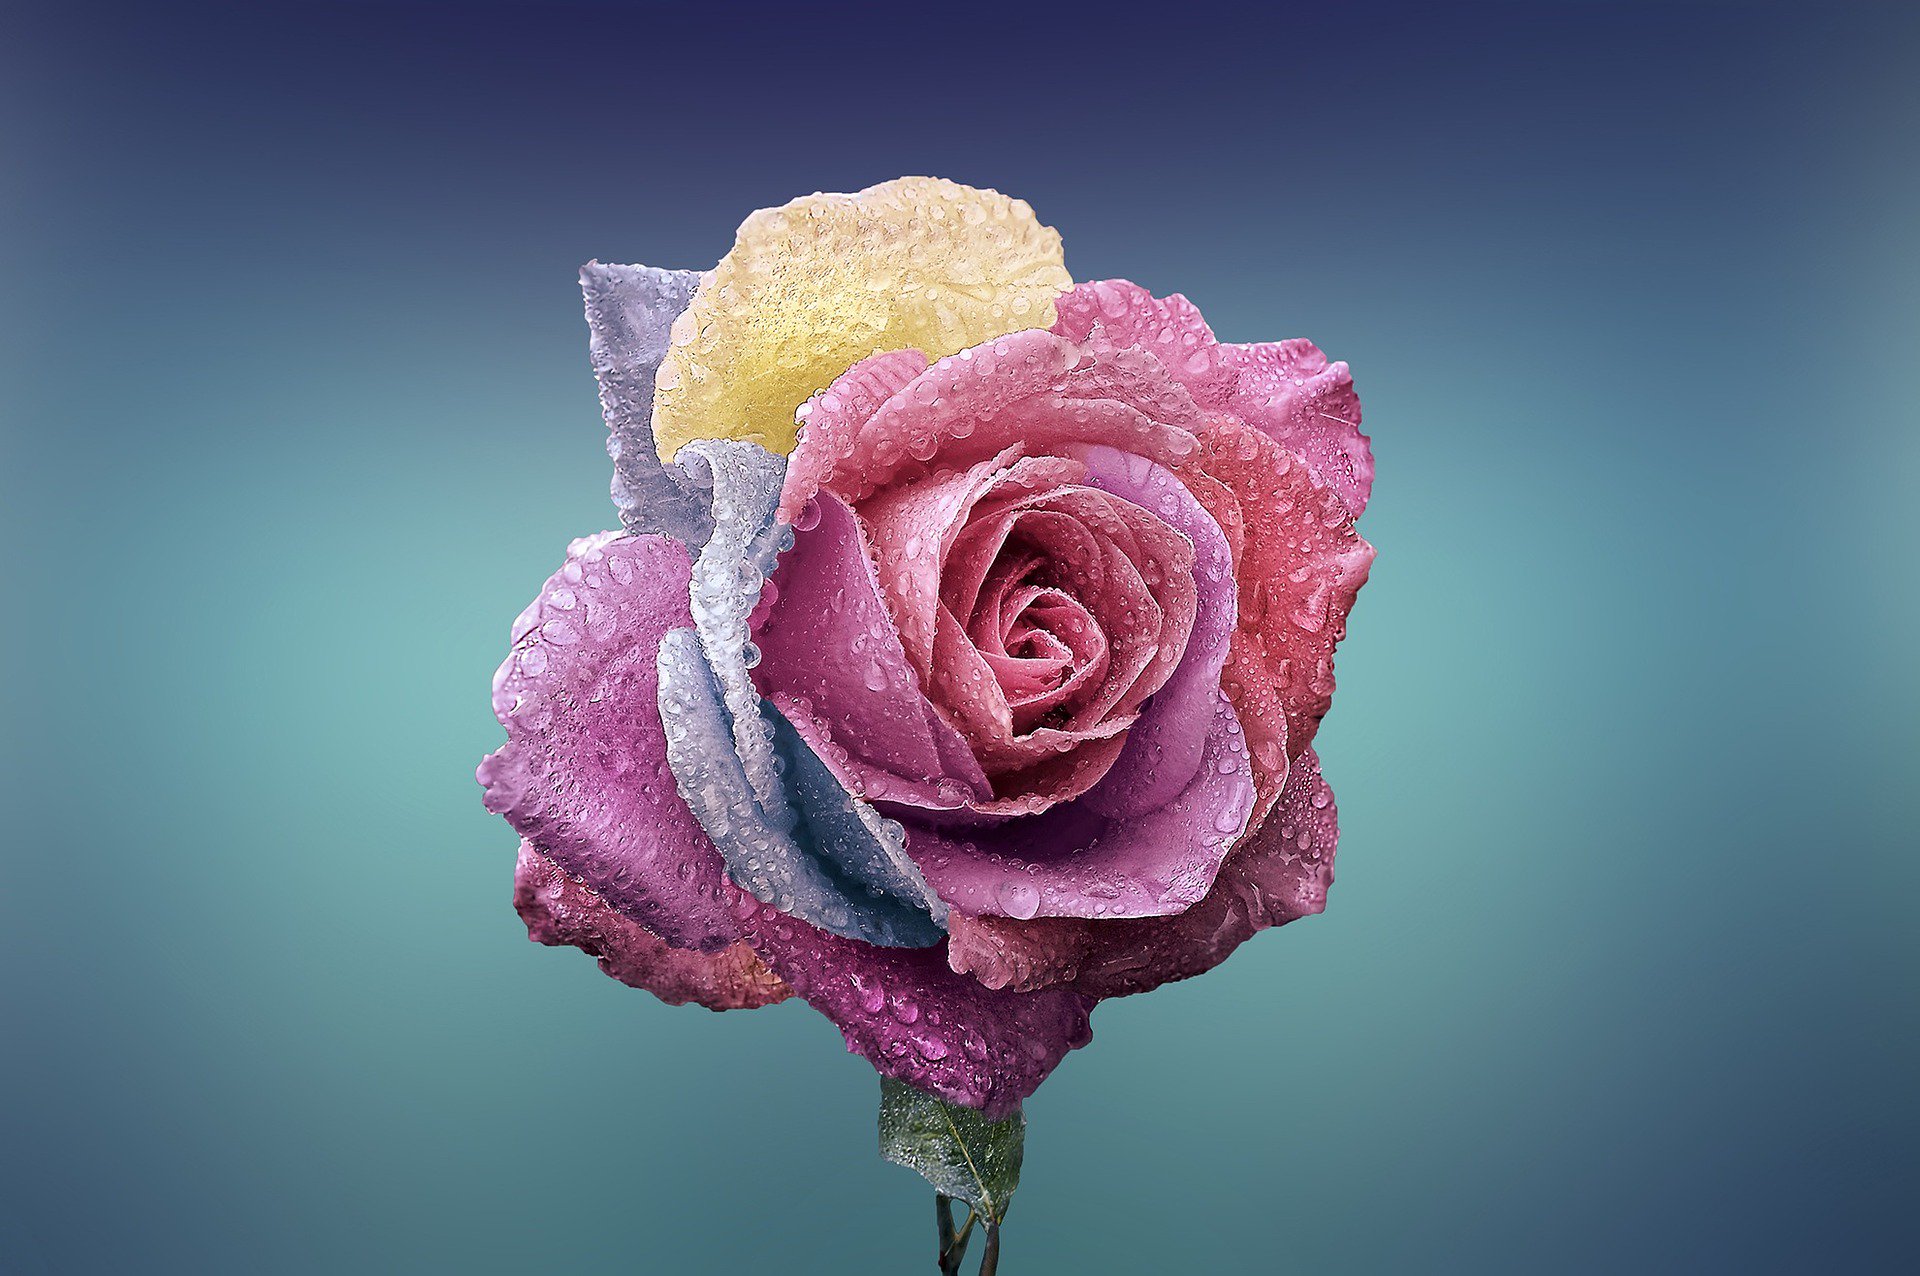 Hình nền hoa hồng đẹp như một tác phẩm nghệ thuật sống động với những cánh hoa nở rộ trên nền trắng. Hãy cho phép màu sắc và sức mạnh của hoa hồng truyền tải tình yêu và sự lãng mạn đến màn hình của bạn.